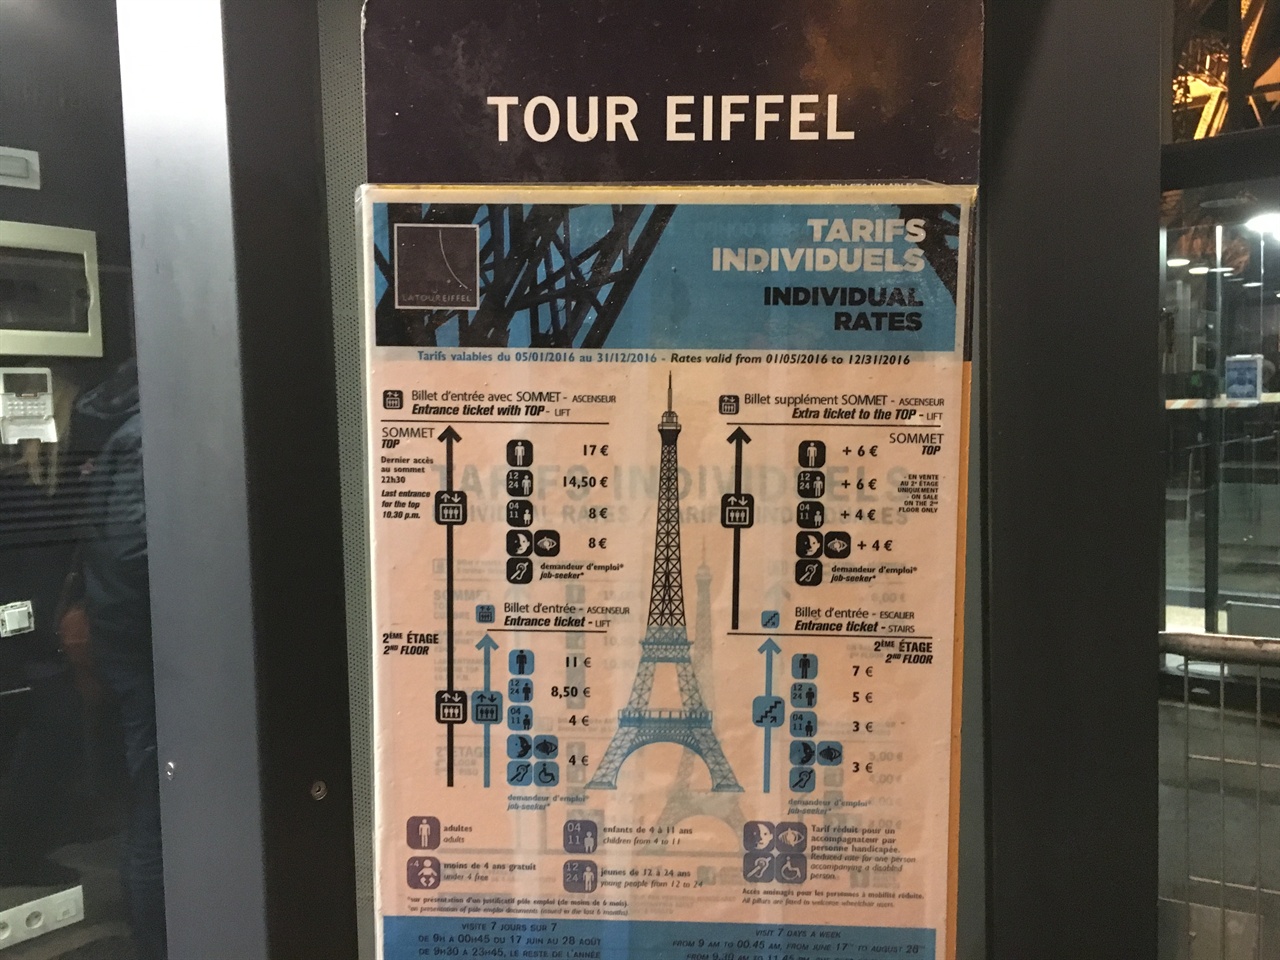  에펠탑 티켓의 가격은 나이대에 따라 세분화돼 있다